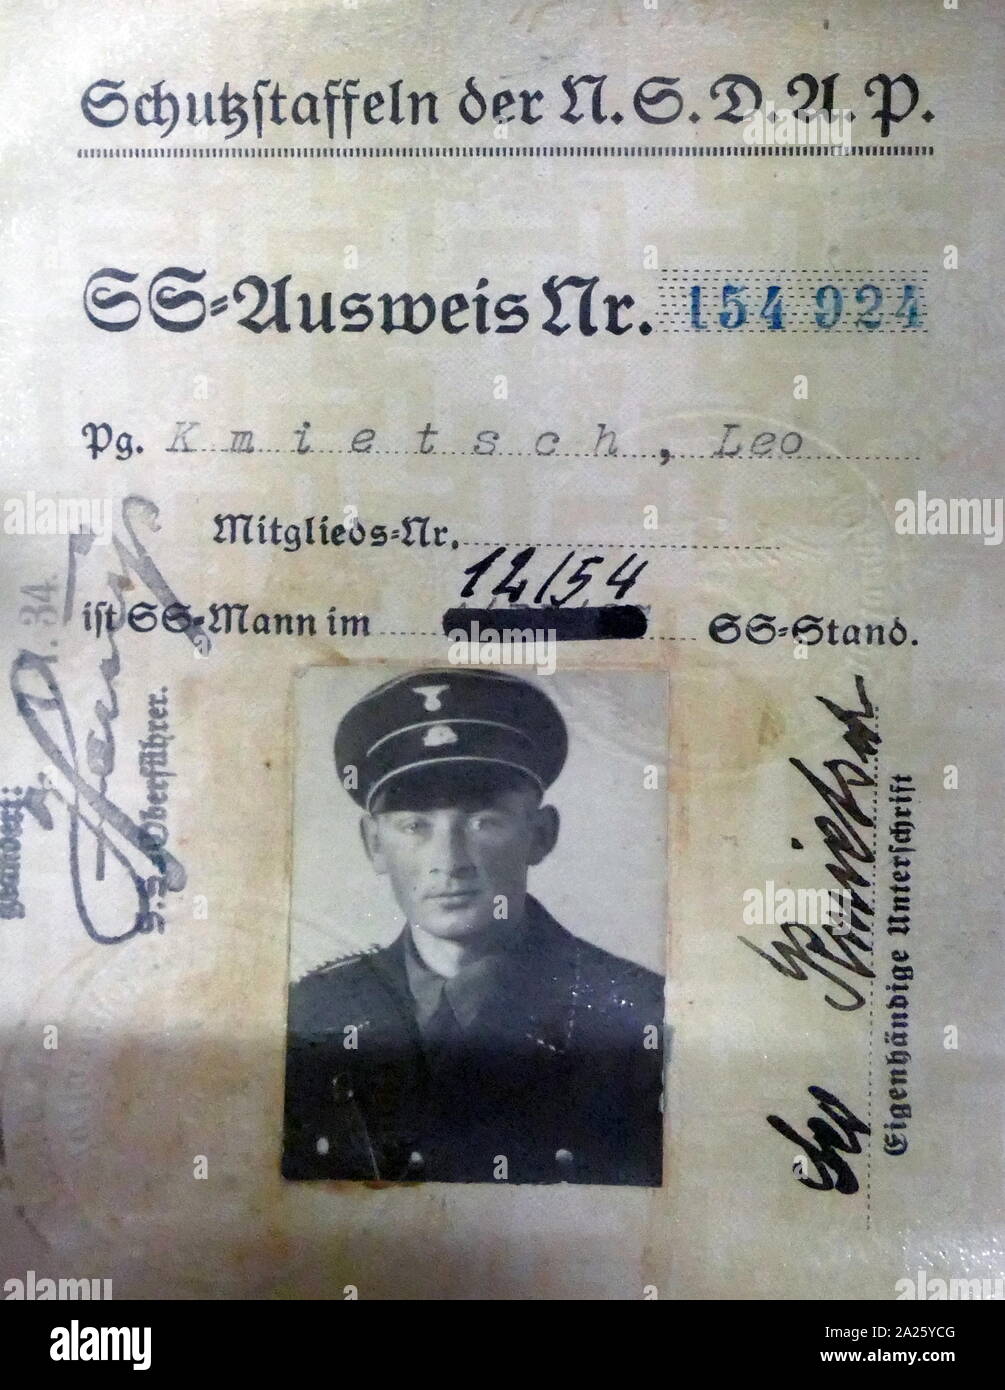 Documentos de identificación para un oficial SS, Leo Kmietsch. La Schutzstaffel (SS) fue una de las principales organizaciones paramilitares bajo Adolf Hitler y el Partido Nazi Foto de stock